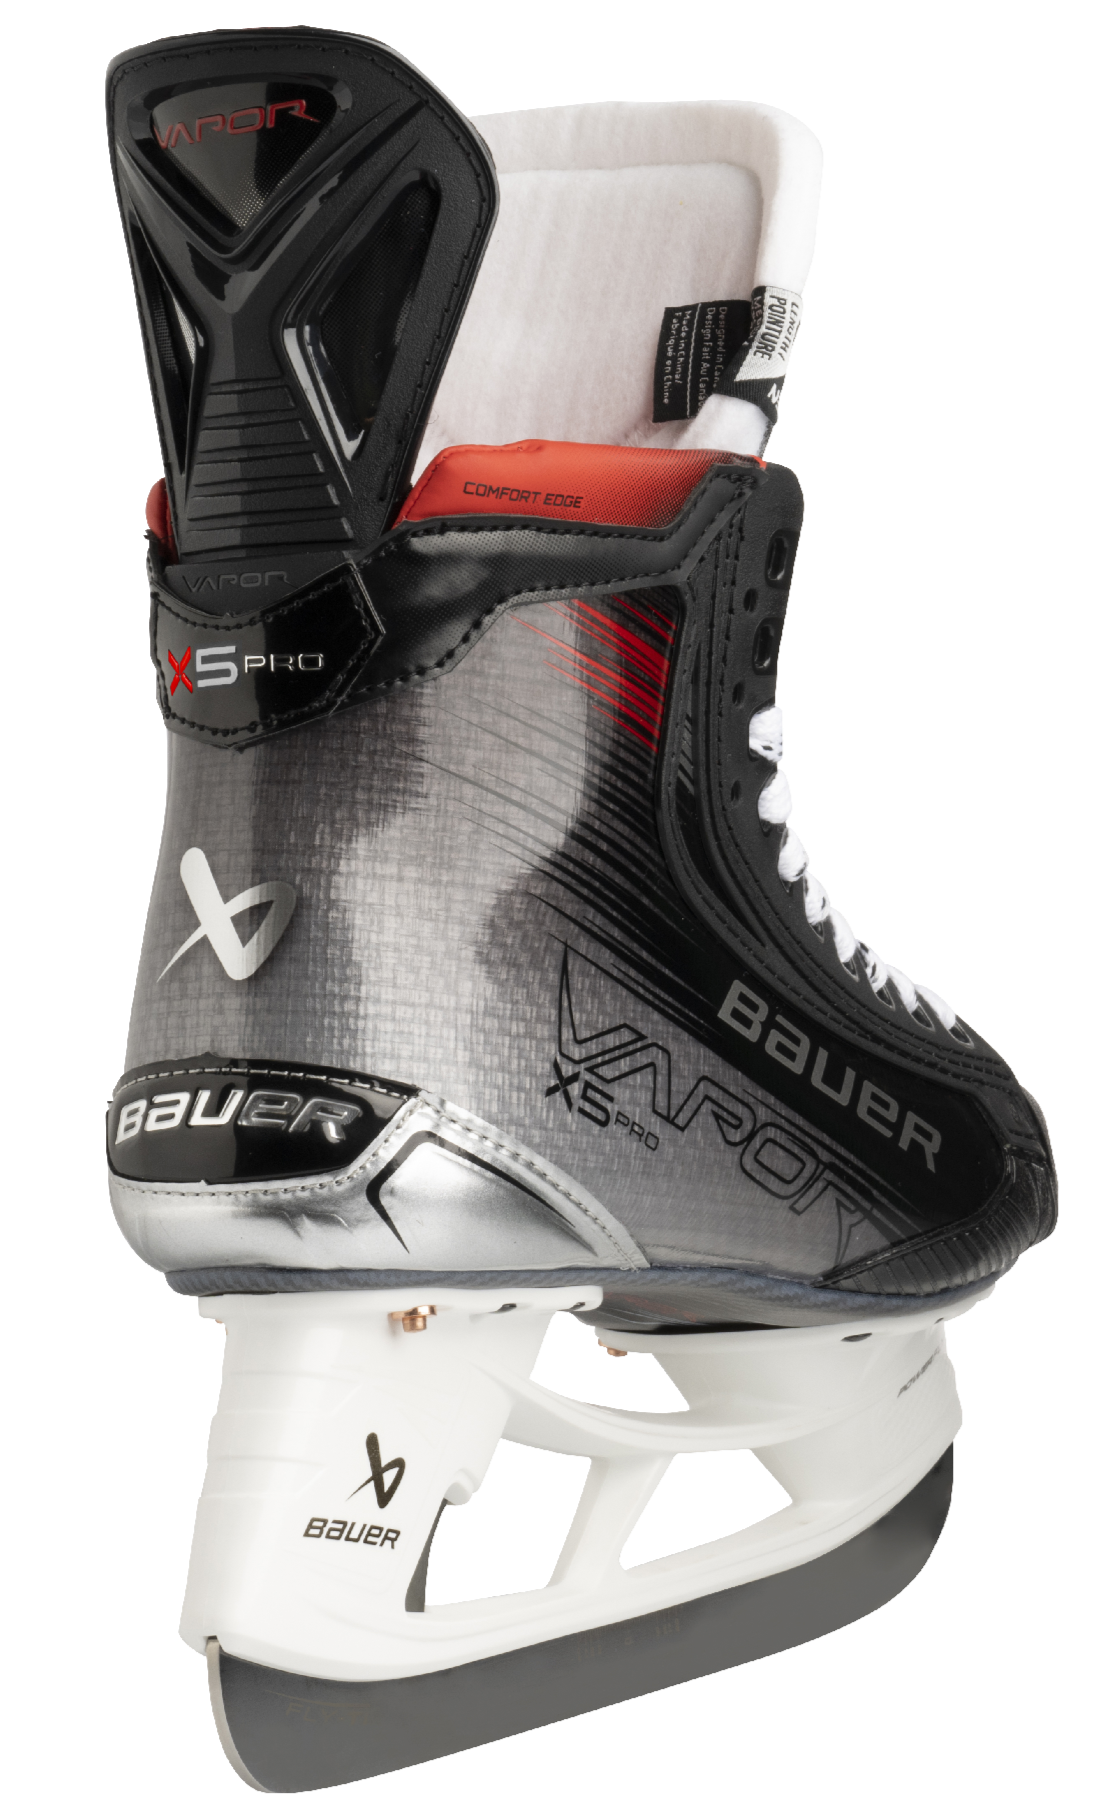 Bauer Vapor X5 Pro Senior Hockey Skates